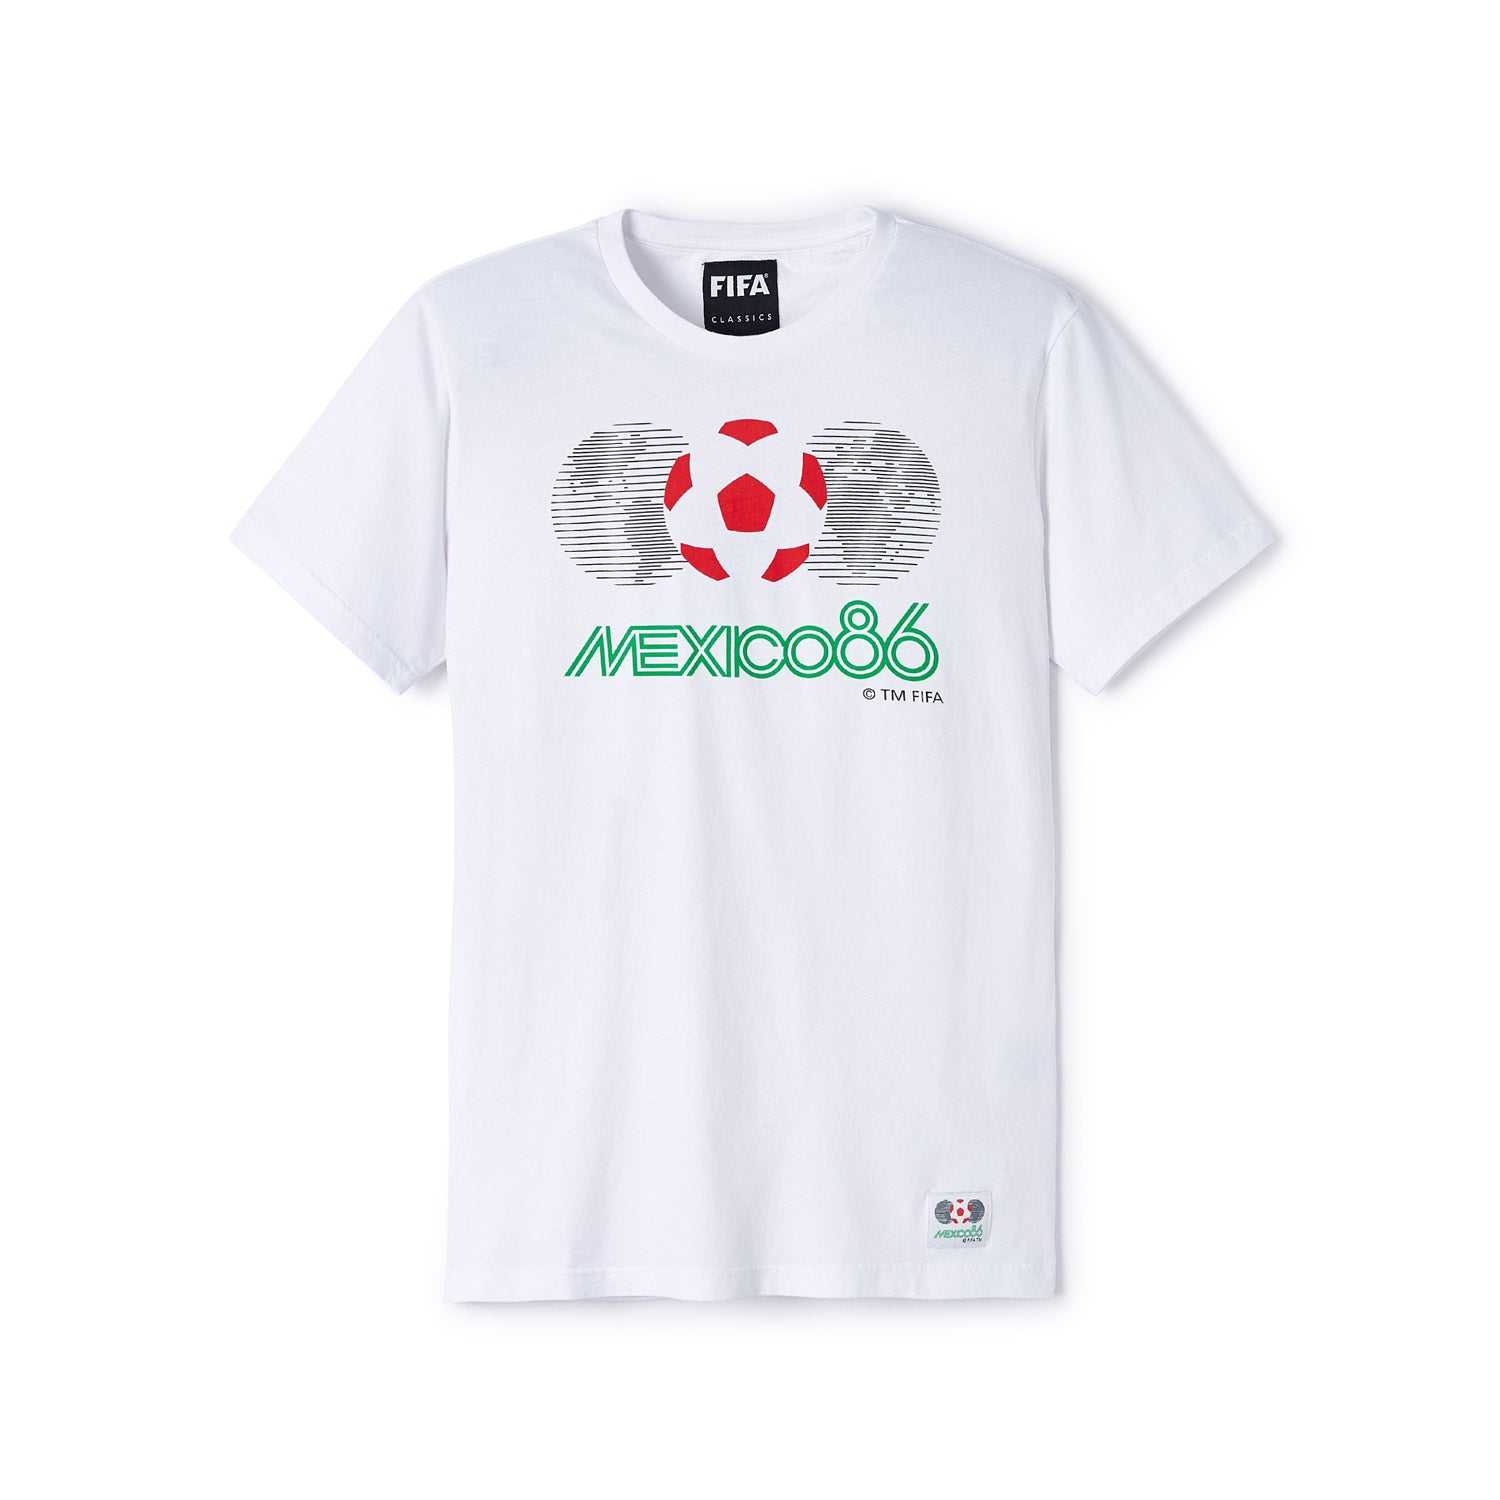 FIFA Rewind 1986 World Cup Emblem T-Shirt